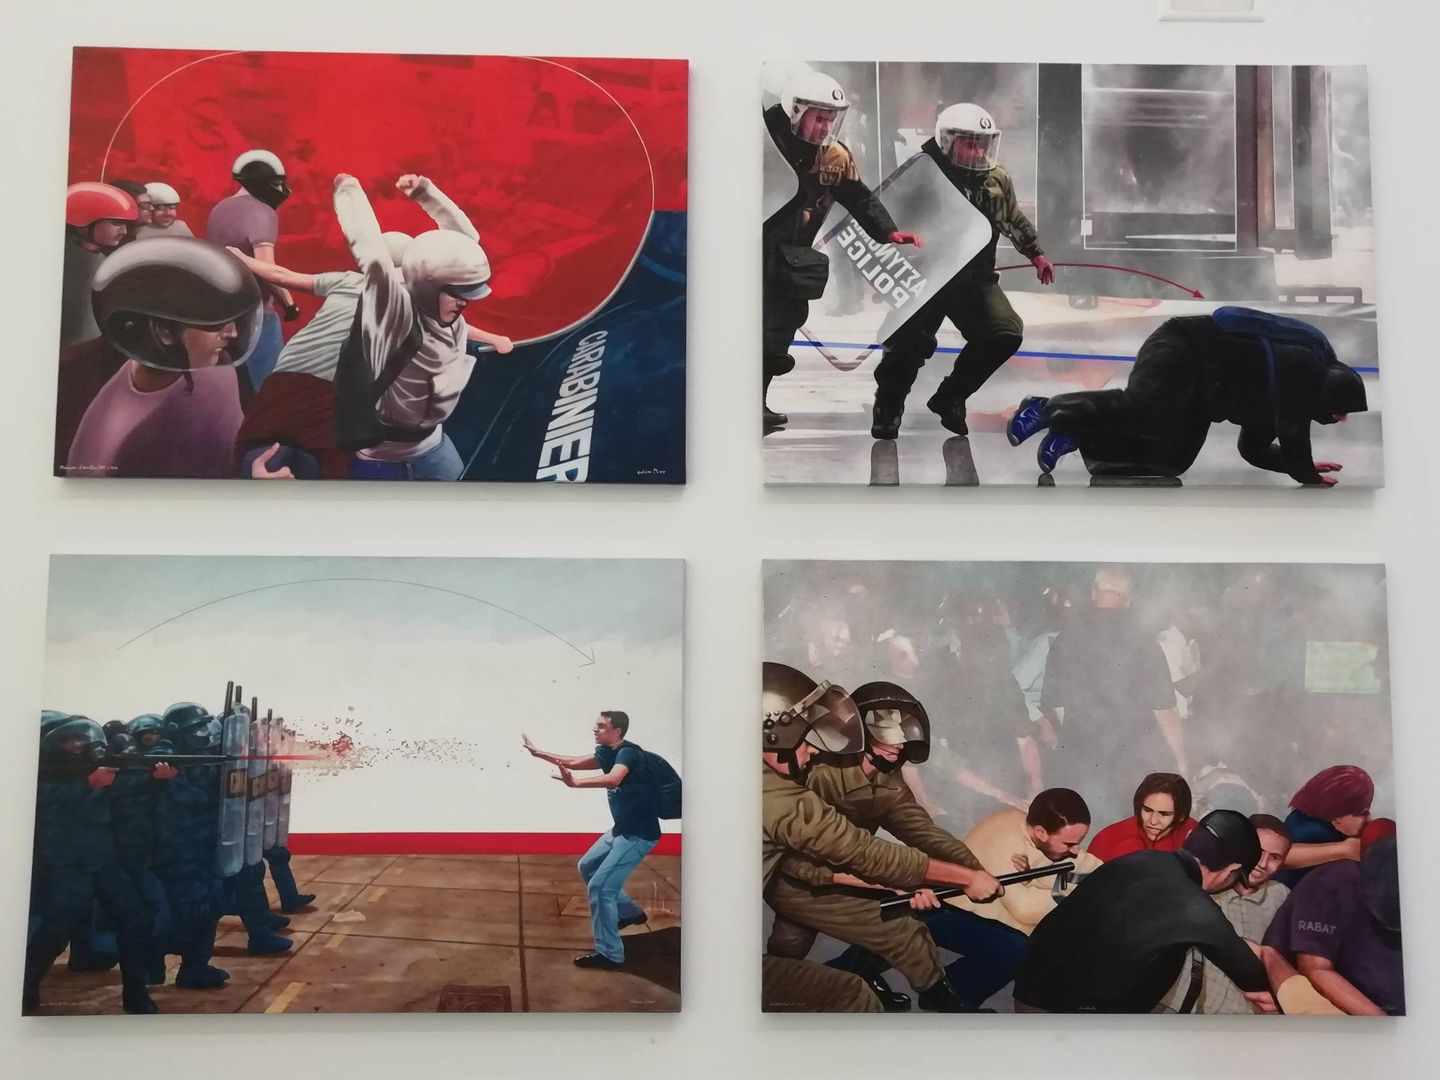 Pinturas de Antoni Miró relativas a enfrentamientos en la calle en distintos conflictos sociales.